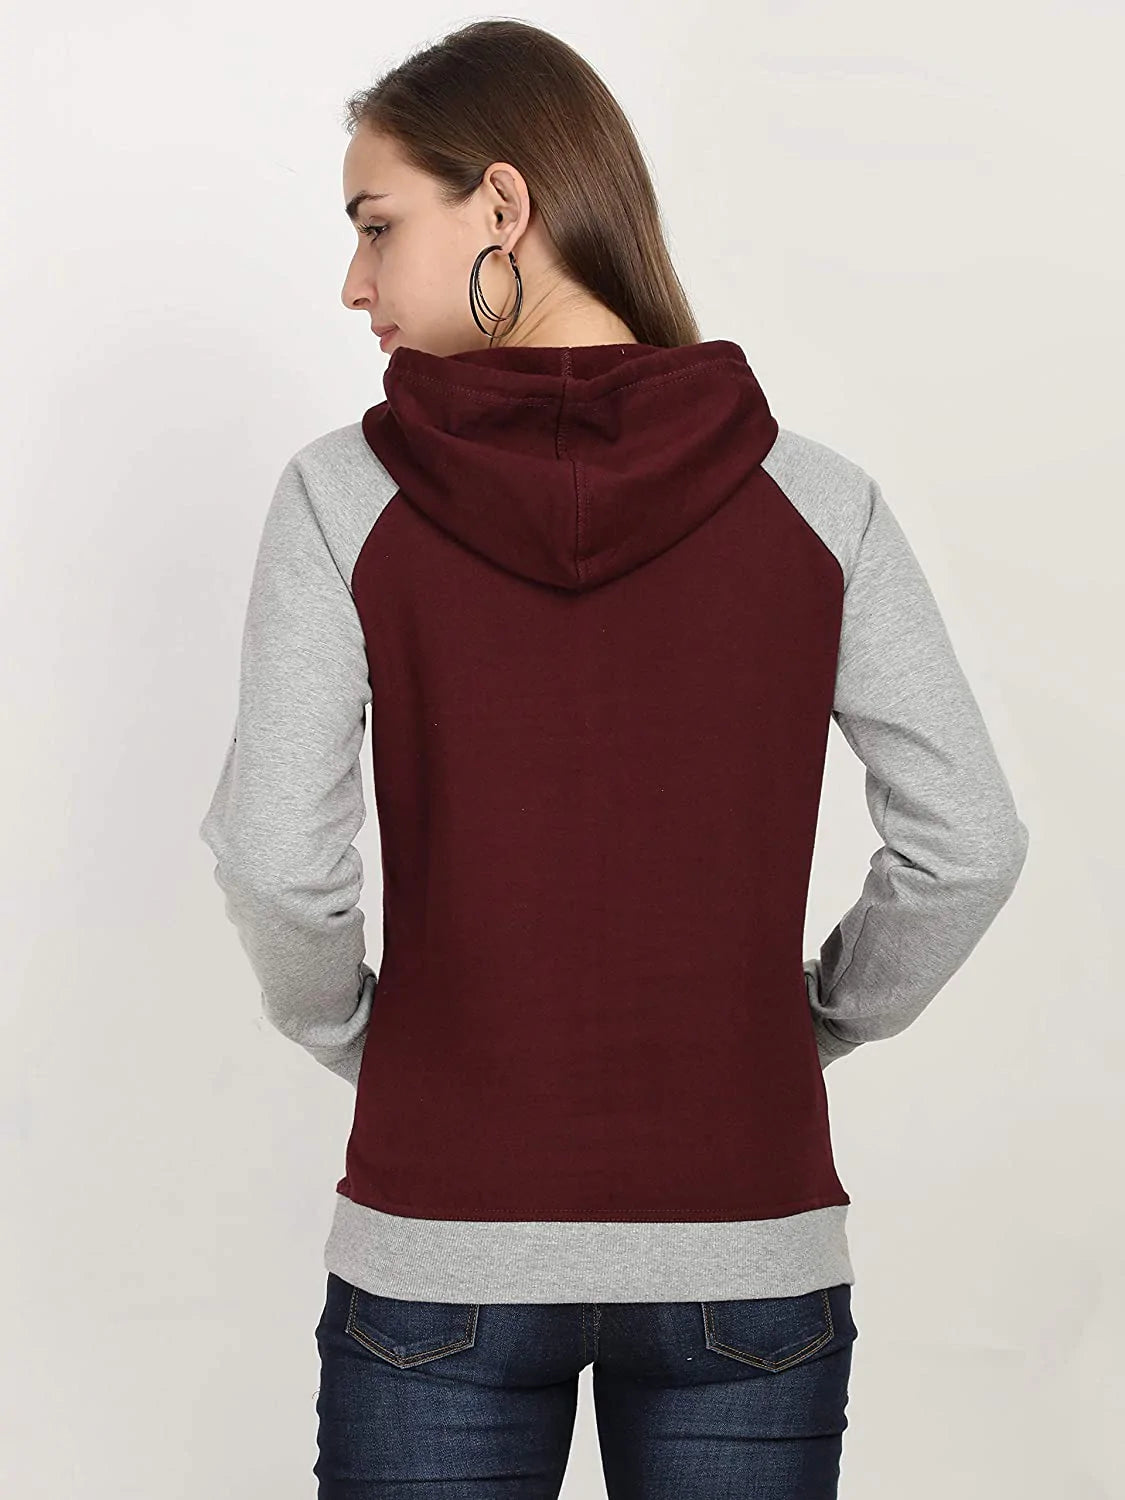 FLEXIMAA Women's Cotton Color Block Raglan Full Sleeve Sweatshirt/Hoodies - fleximaa-so